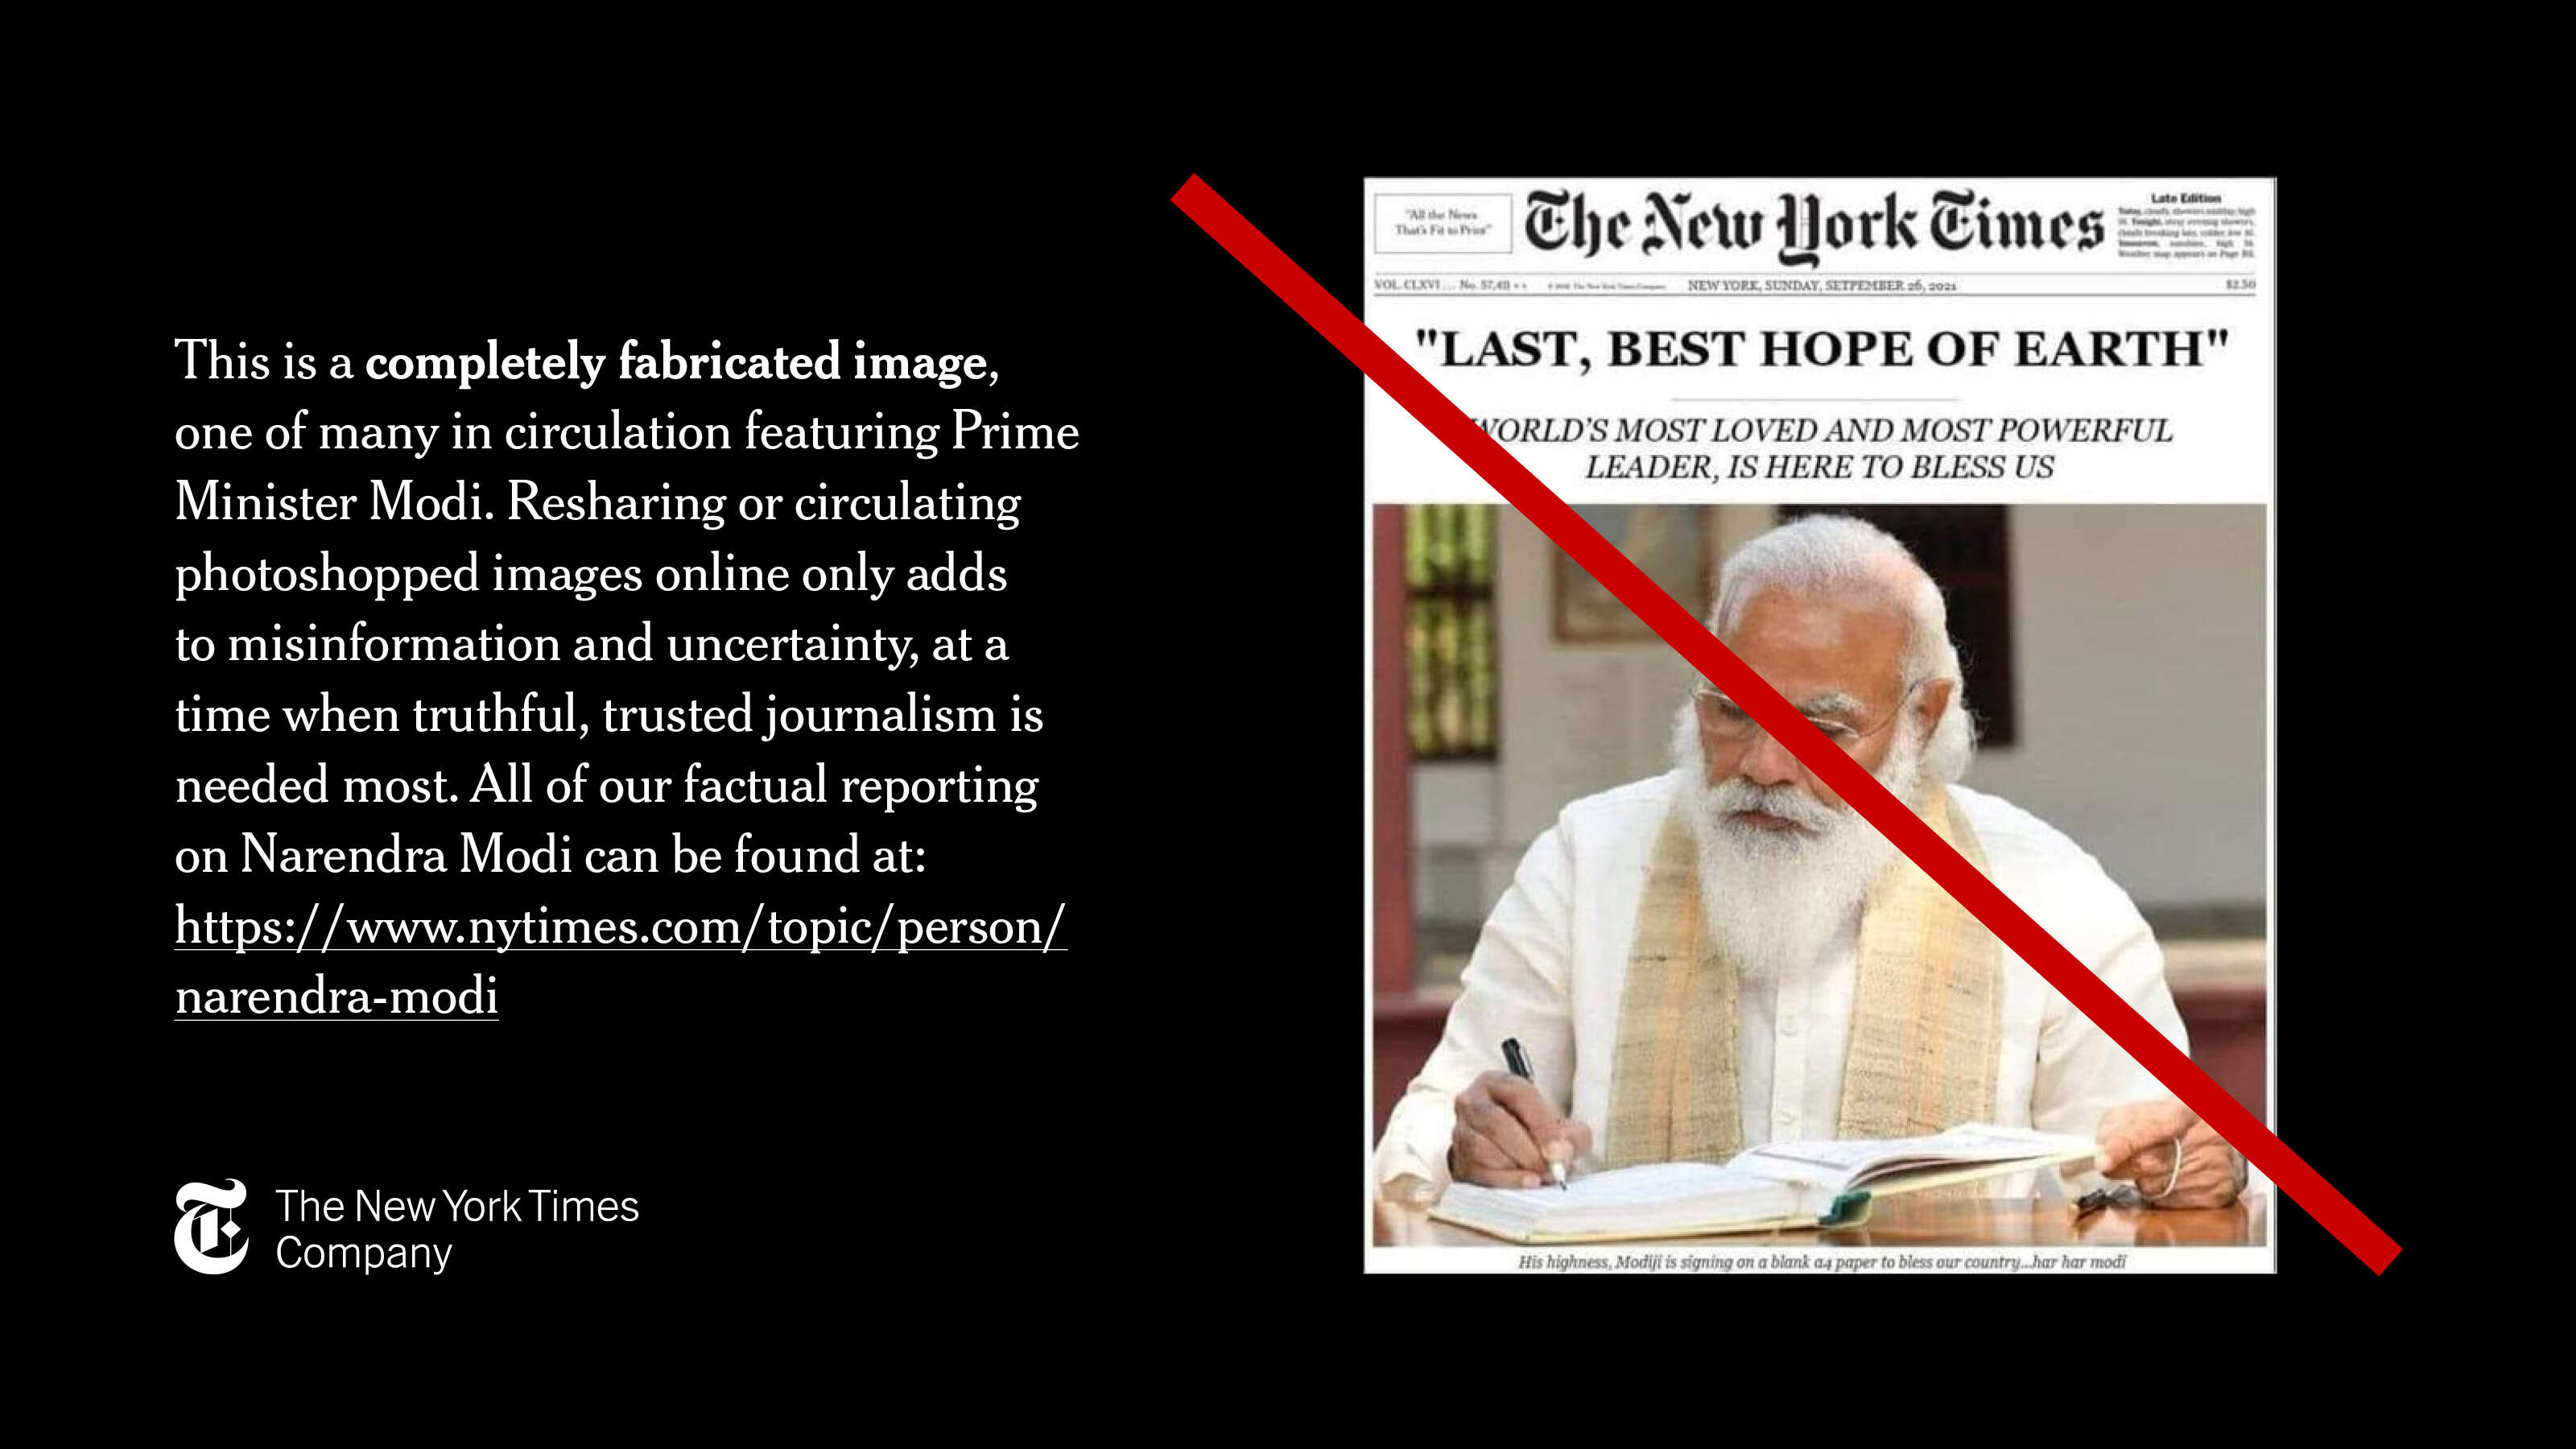 Newyork times News about modi : भक्तों के आईटी सेल ने मोदी की कराई अंतरराष्ट्रीय बेइज्जती, NY Times ने कहा नहीं छापी पीएम की तारीफ में यह खबर